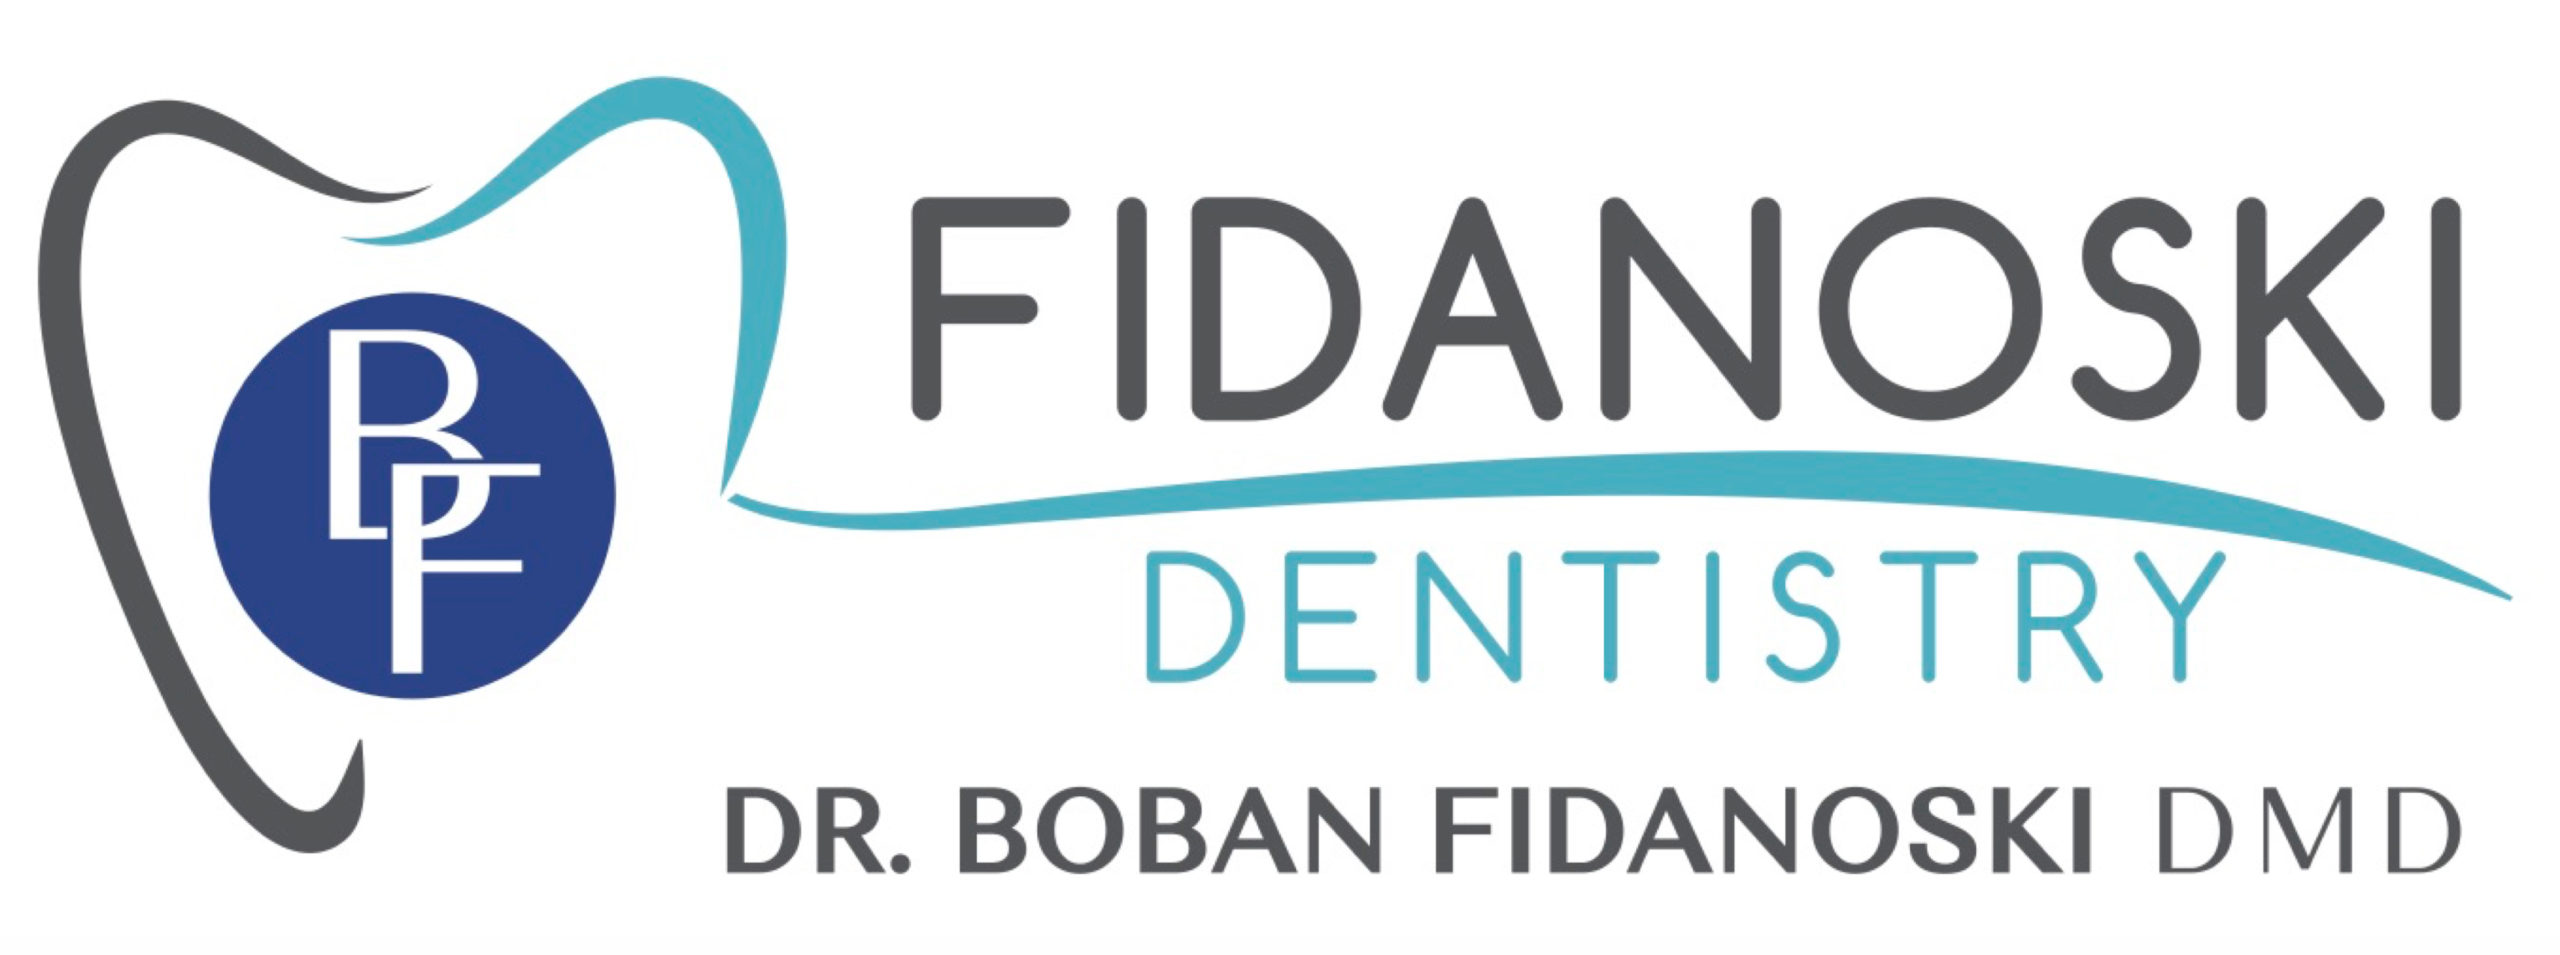 Fidanoski Dentistry